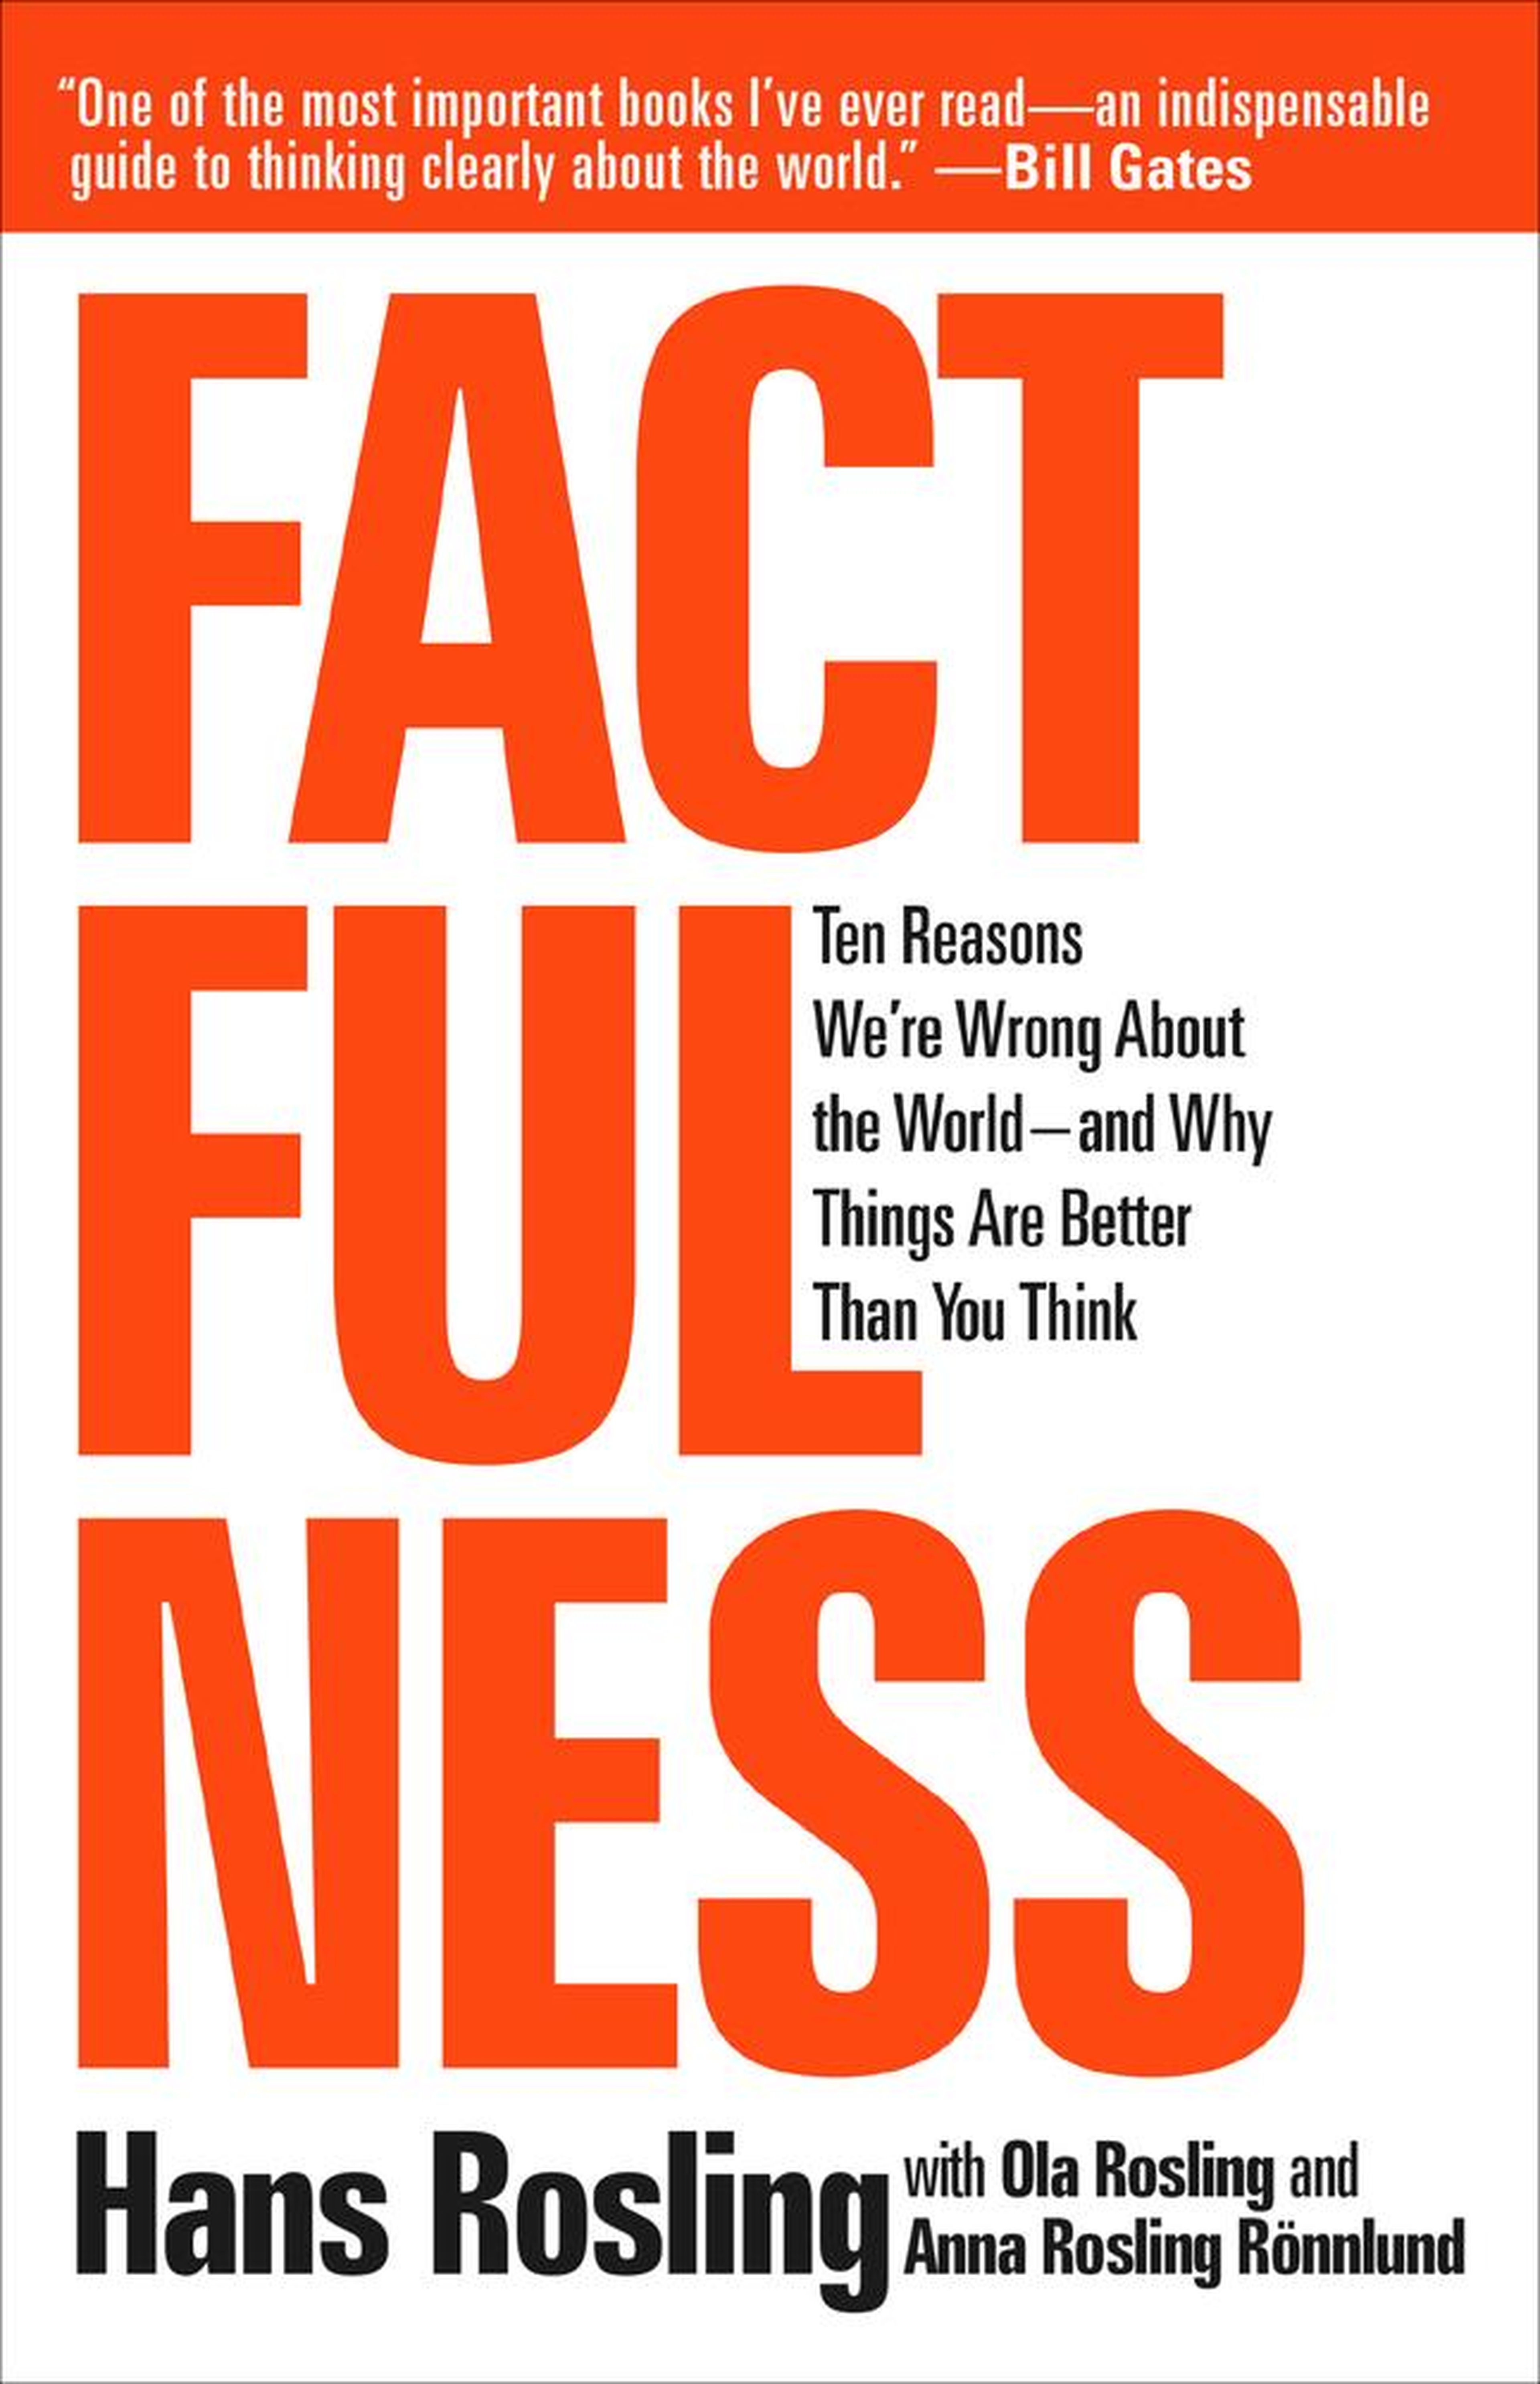 Steven Pinker: "Factfulness" by Hans Rosling